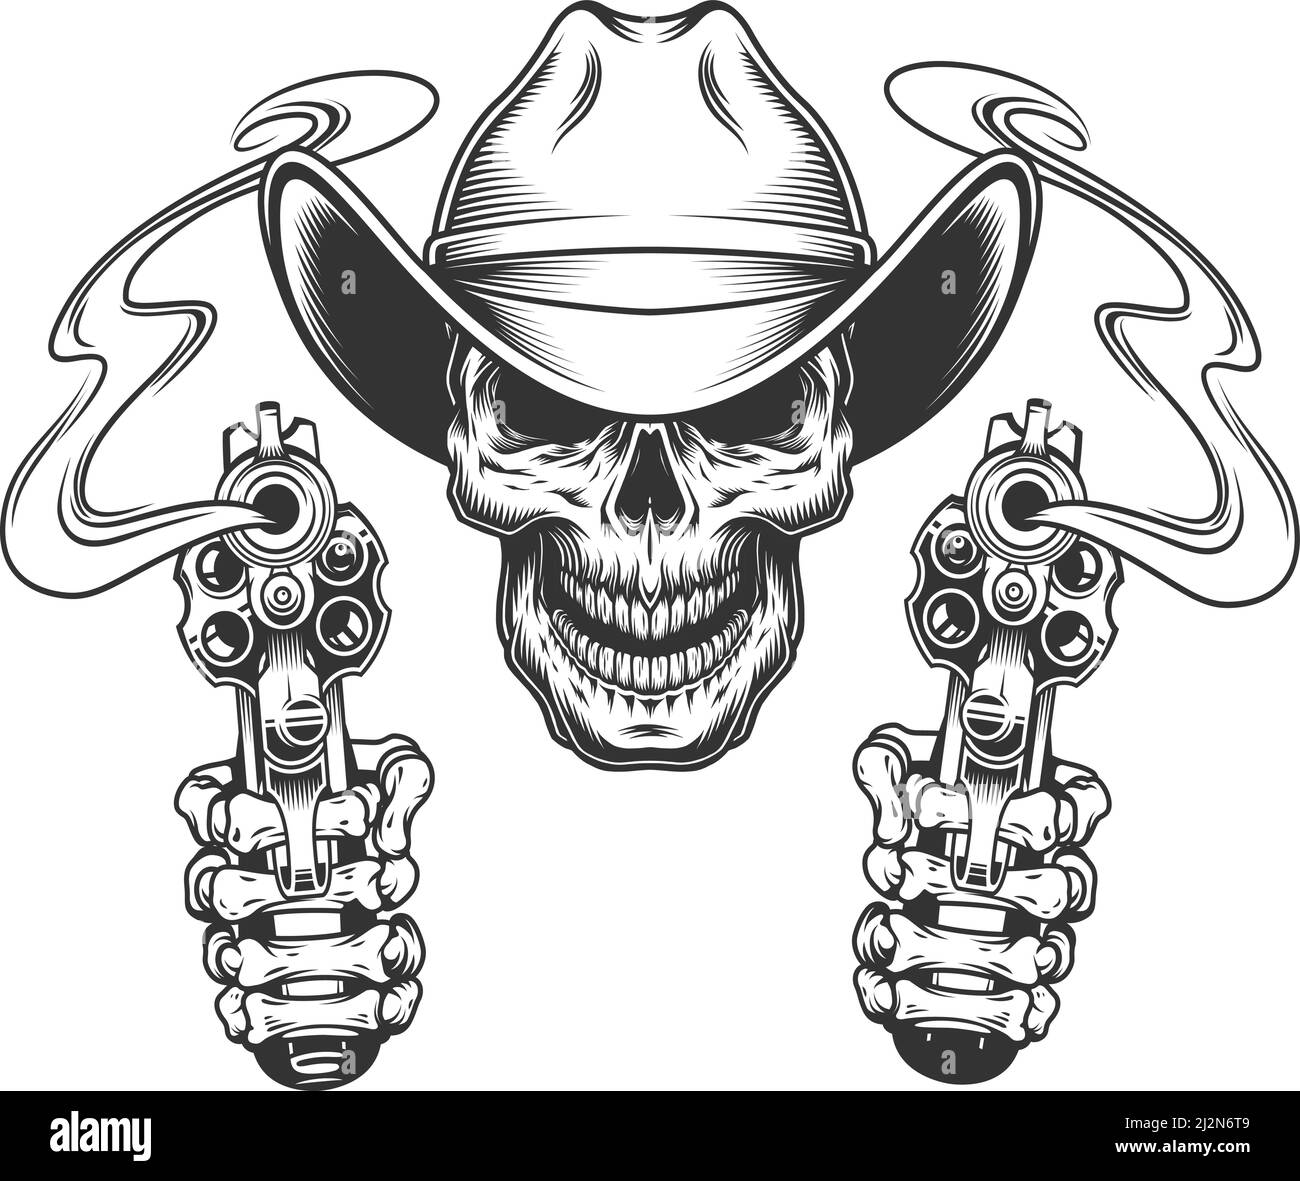 Crâne monochrome vintage en chapeau de cowboy et mains de squelette illustration vectorielle isolée par pistolets Illustration de Vecteur